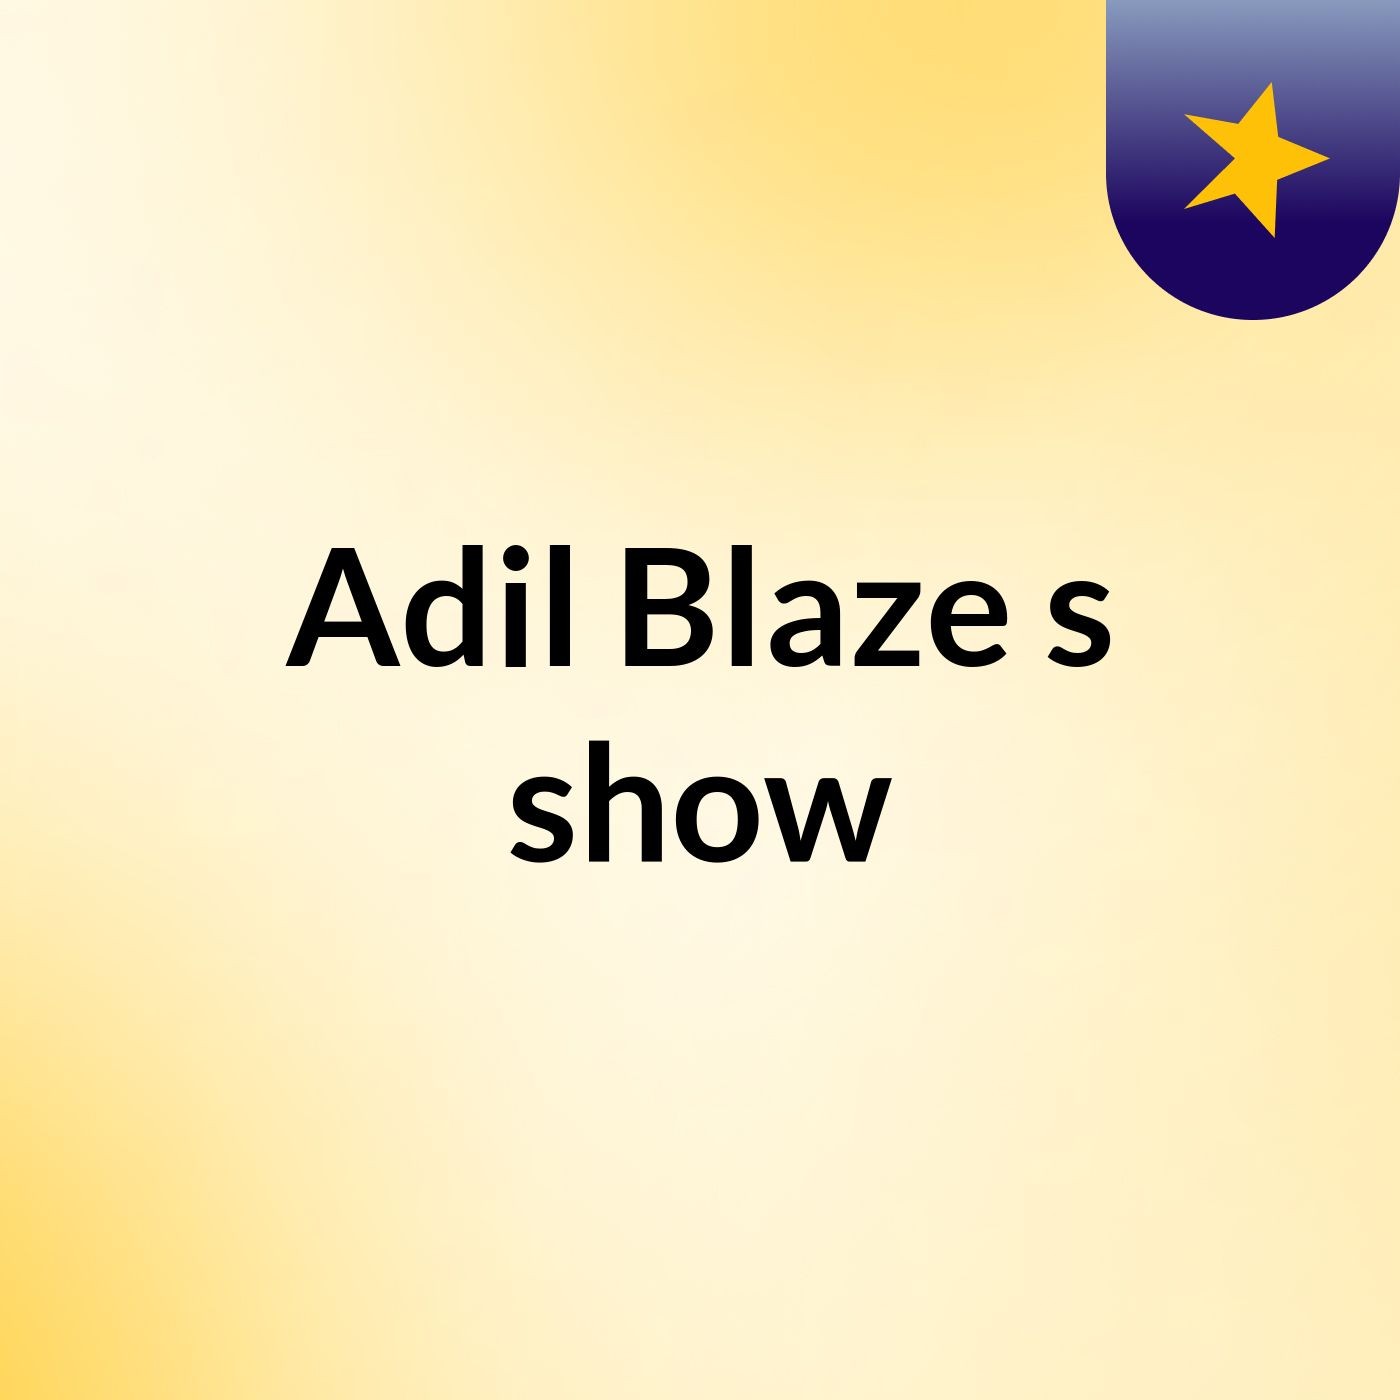 Adil Blaze's show